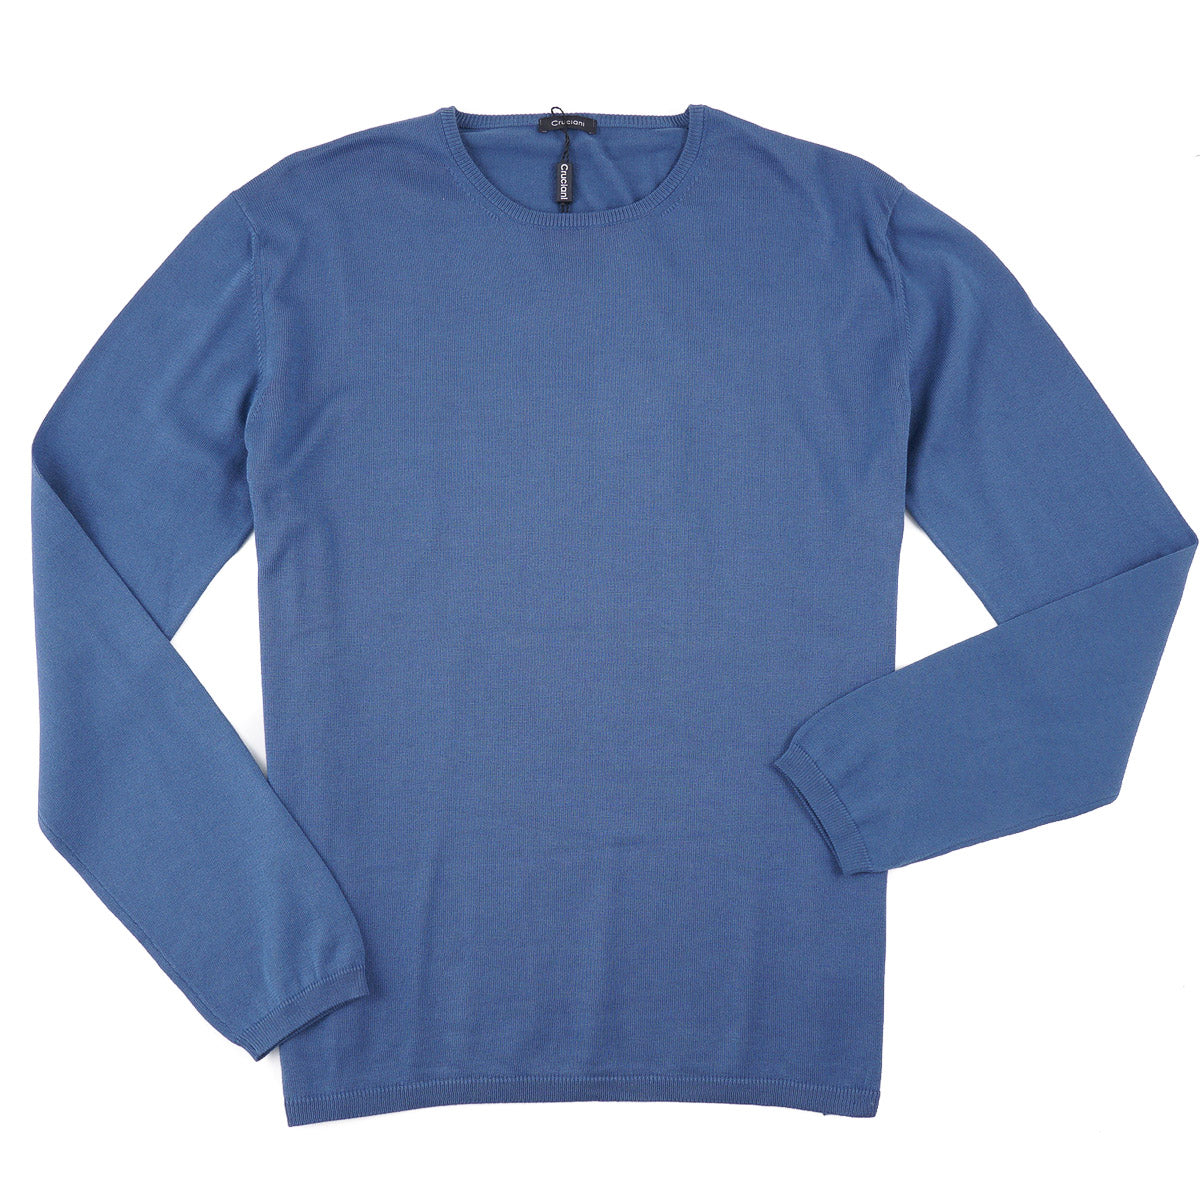 Cruciani Fine-Gauge Cotton Sweater - Top Shelf Apparel